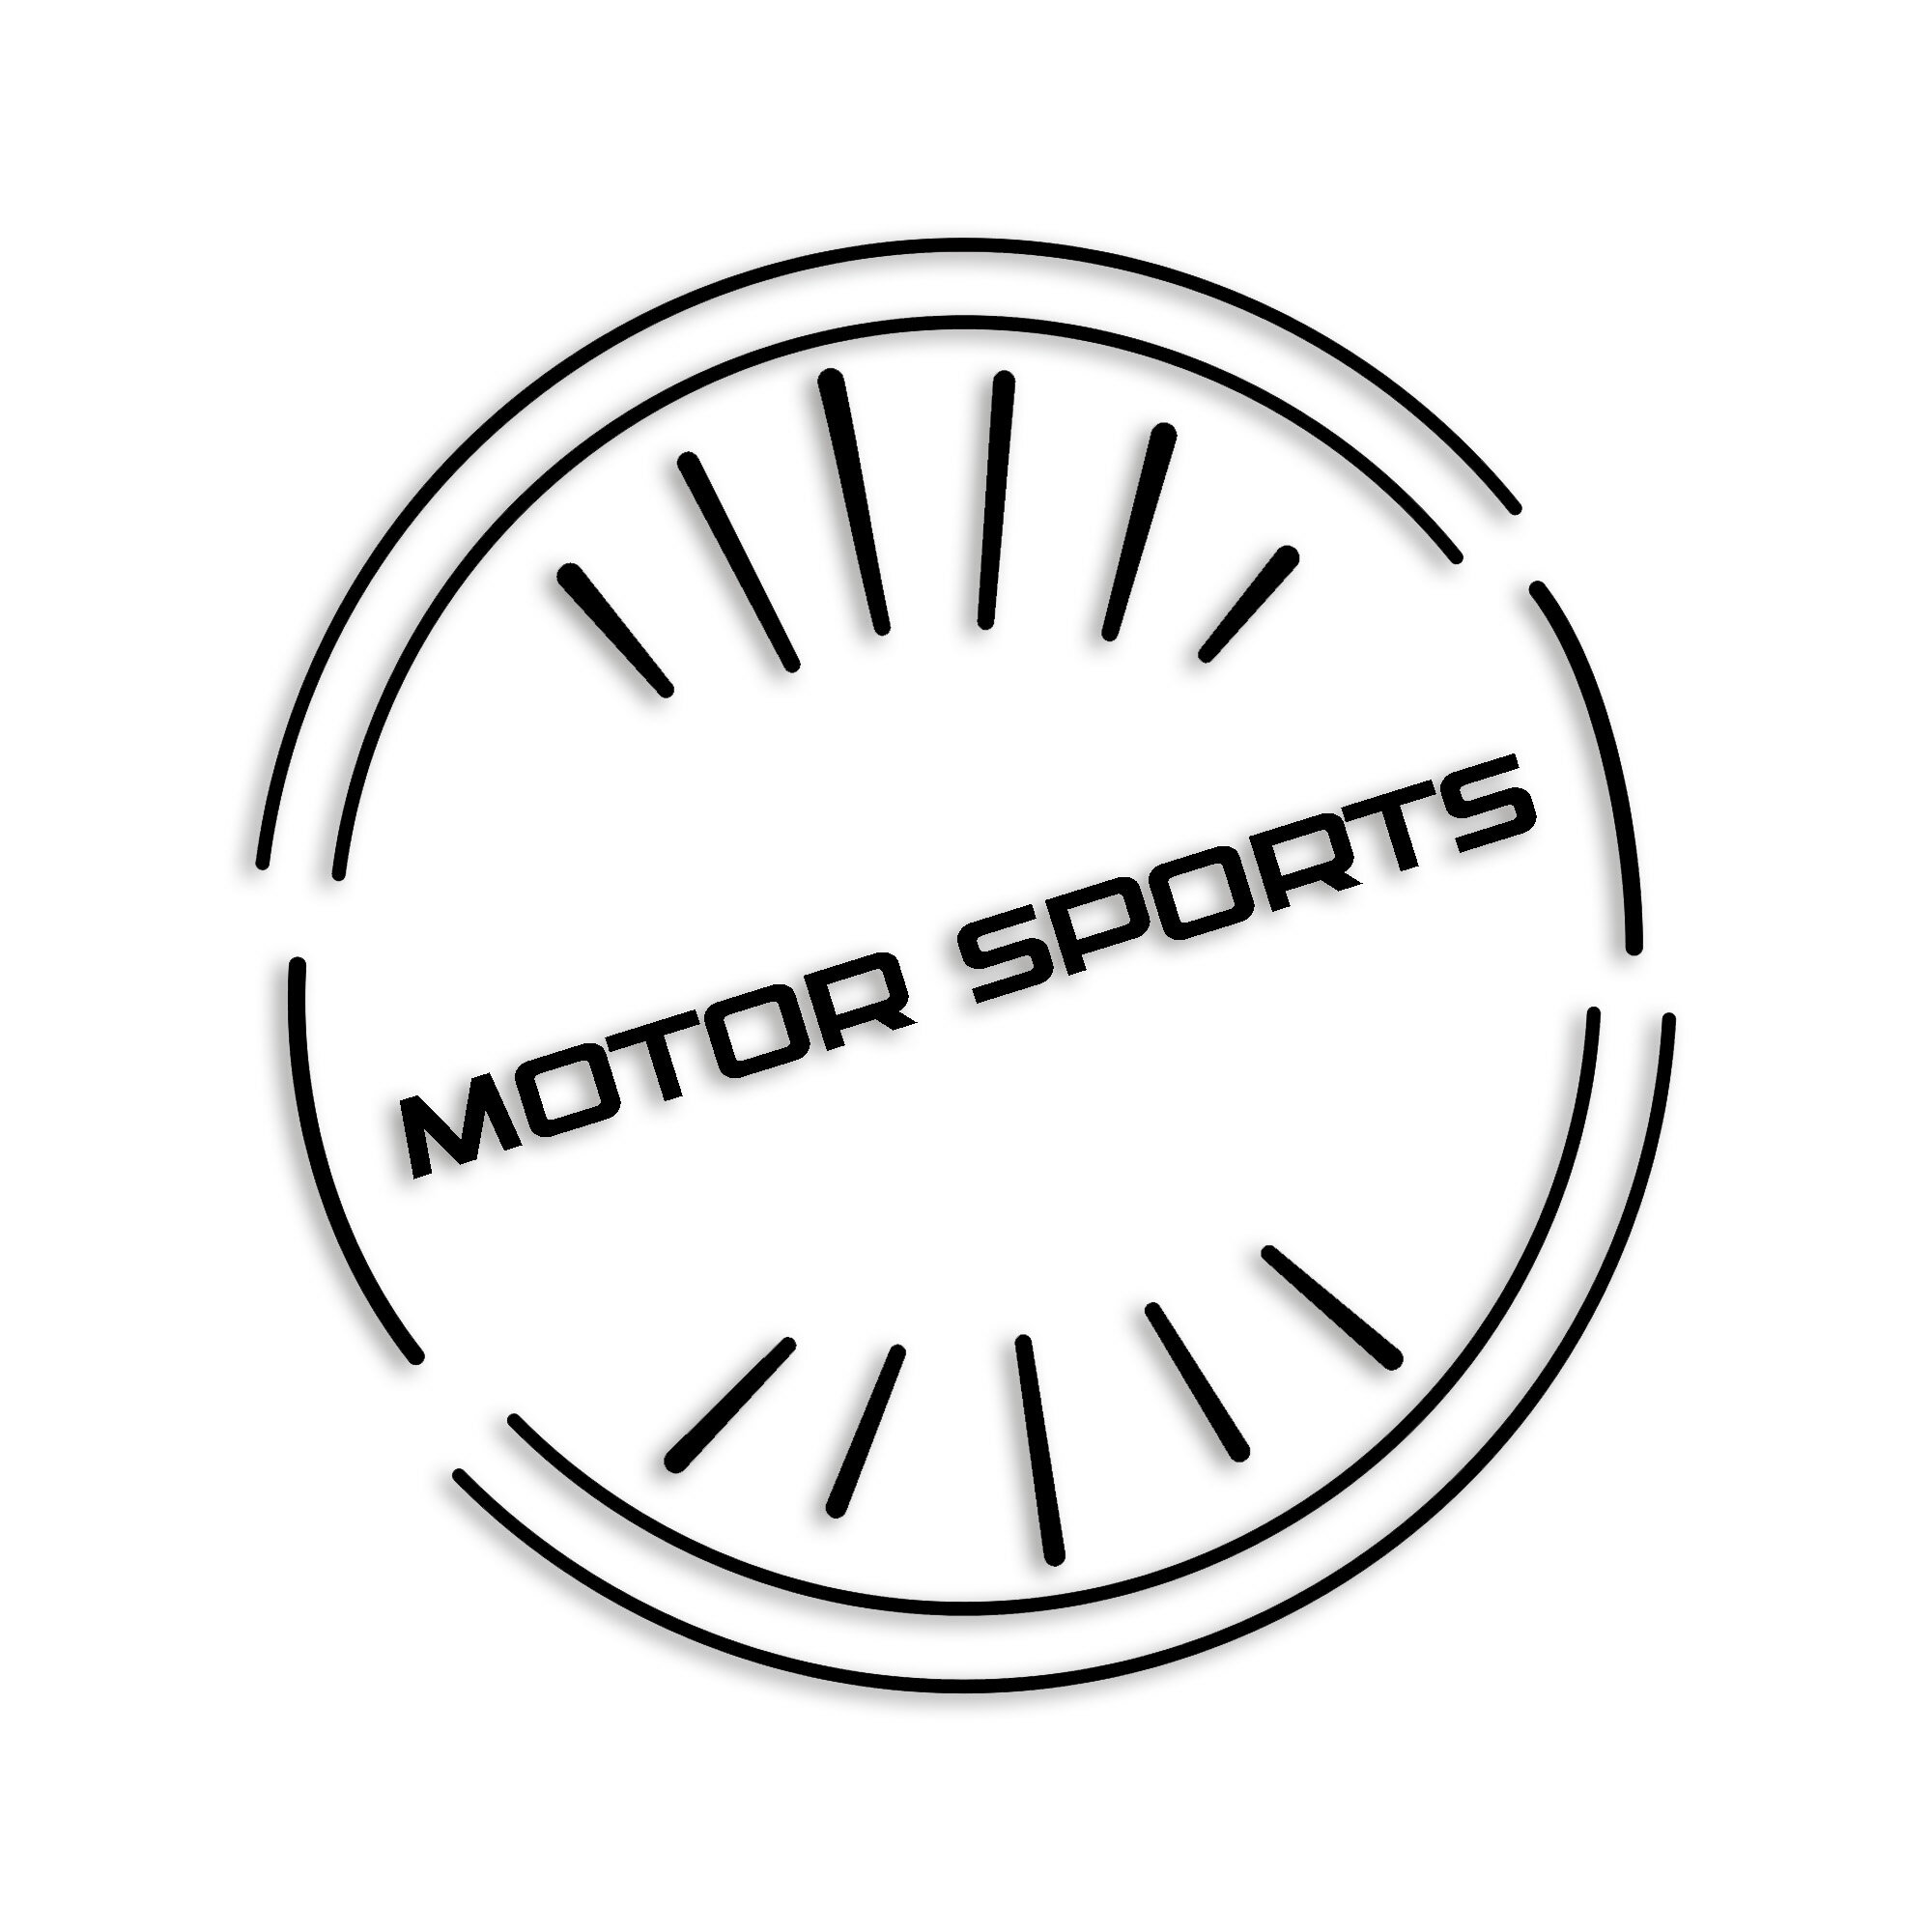 motorsports JbeBO XebJ[ V[ H   S h  fJ[